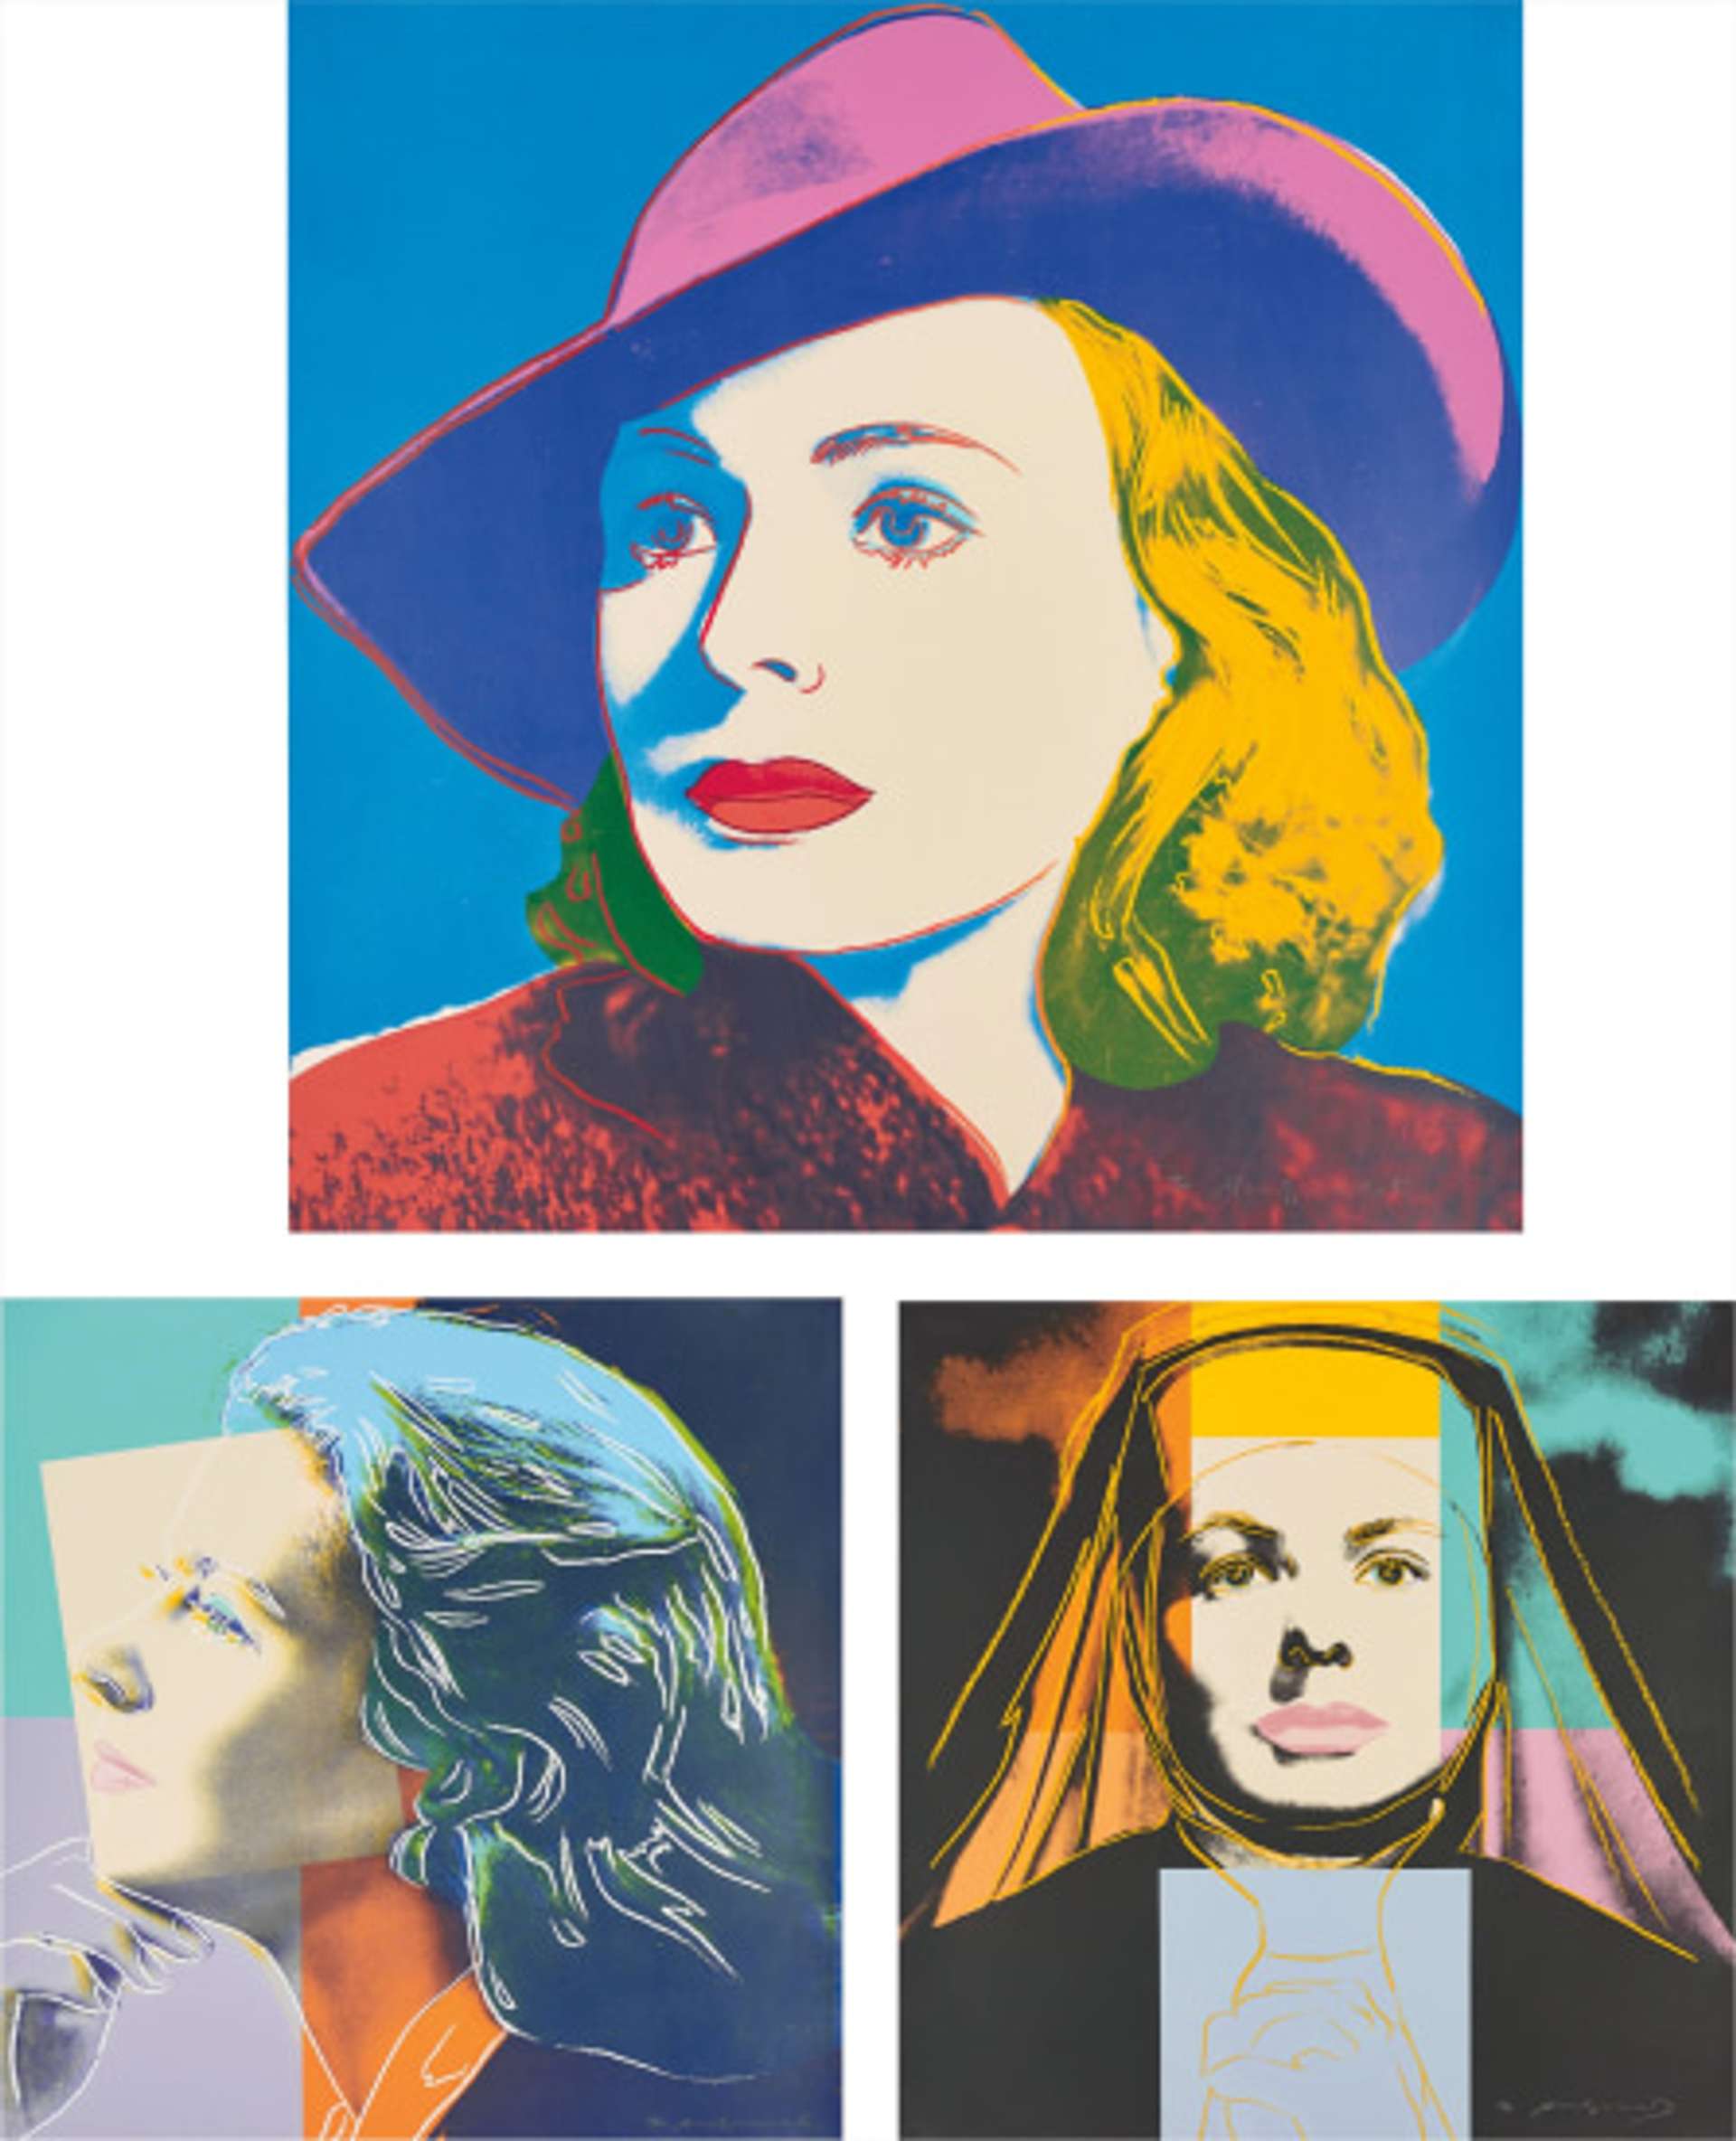 Ingrid Bergman (complete set) by Andy Warhol - MyArtBroker